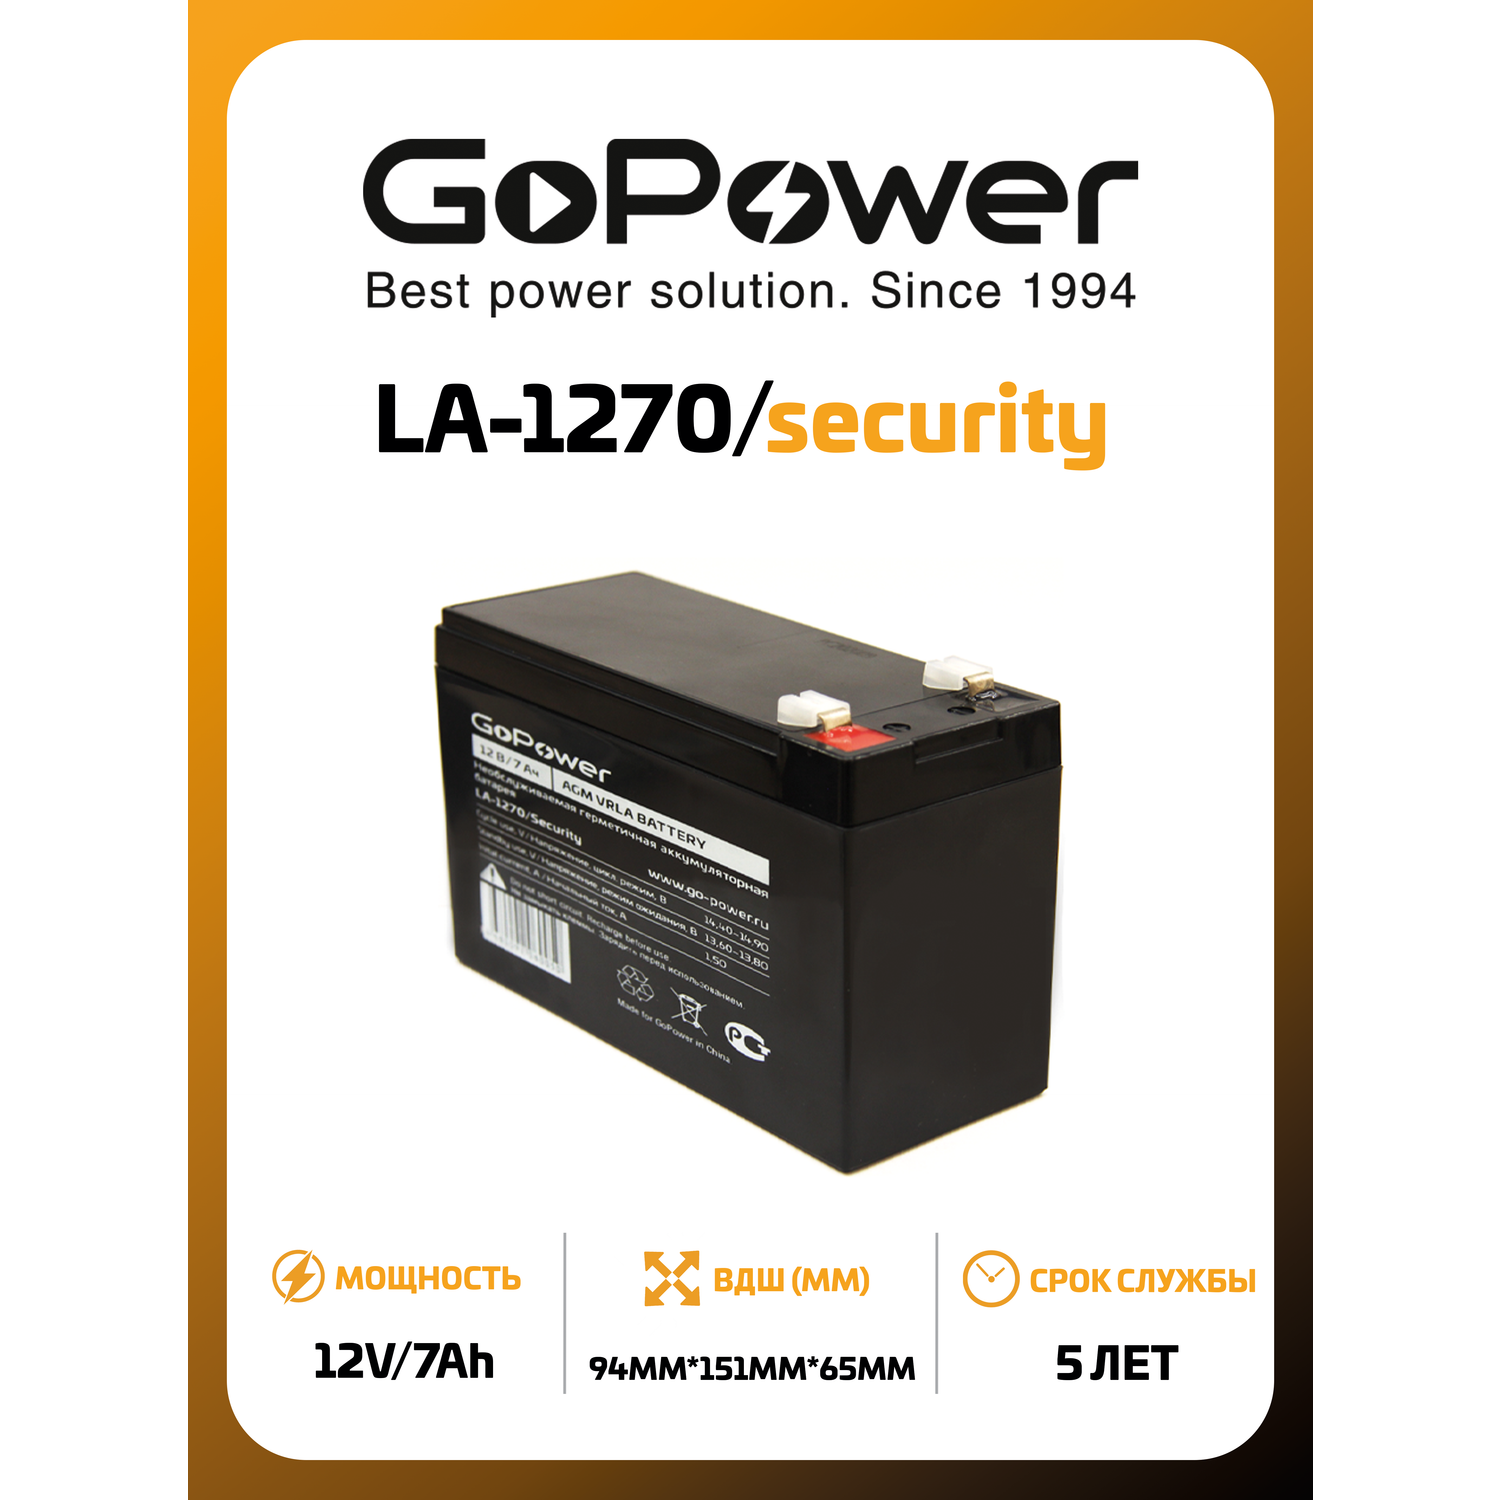 Аккумулятор GoPower свинцово-кислотный LA-1270/security 12V 7Ah клеммы T2/ F2 1/5 - фото 1